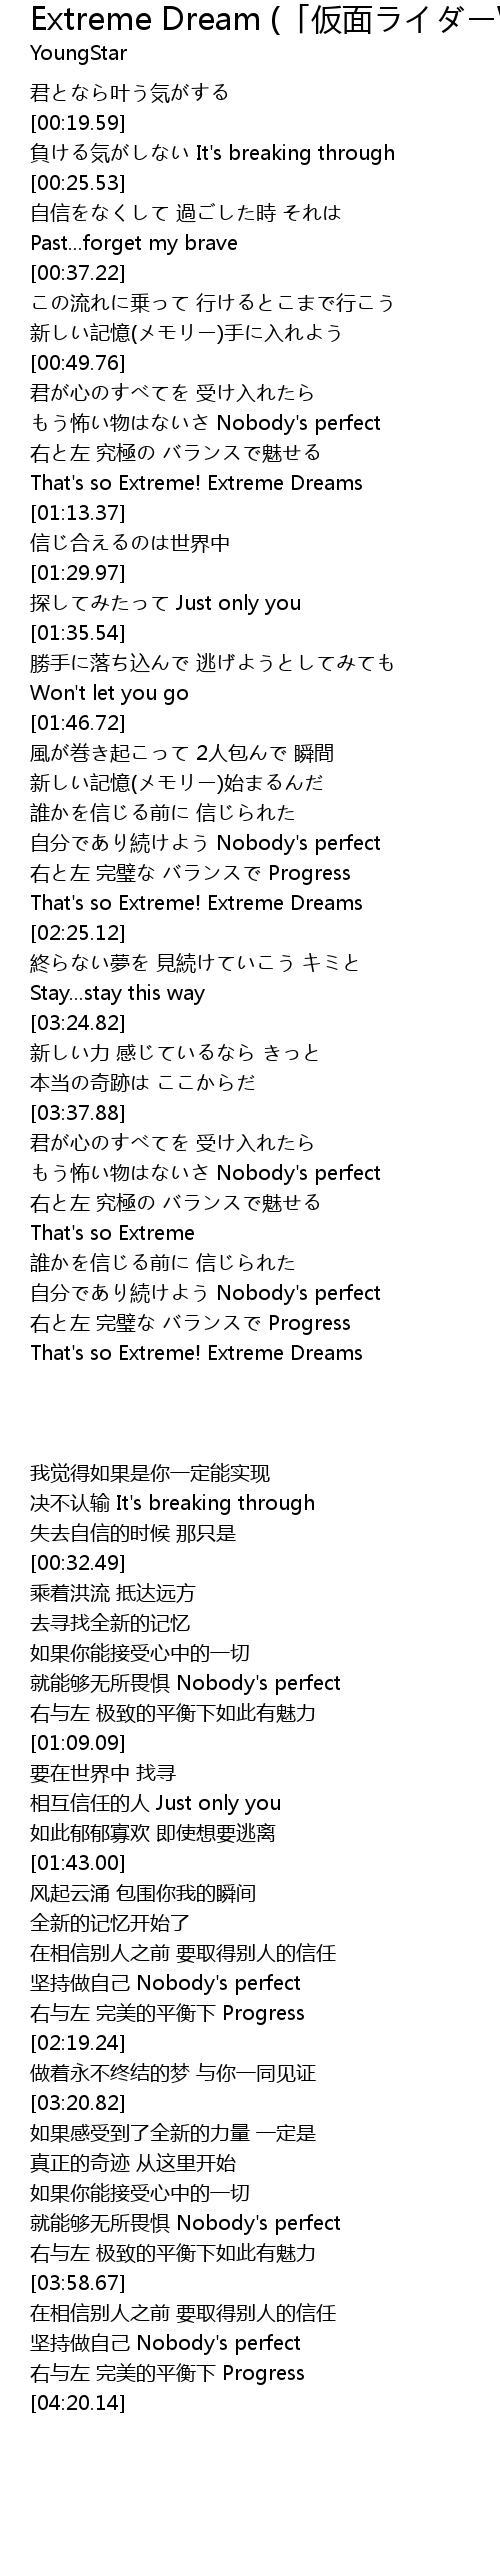 Extreme Dream 仮面ライダーw ダブル 歌词 歌词网